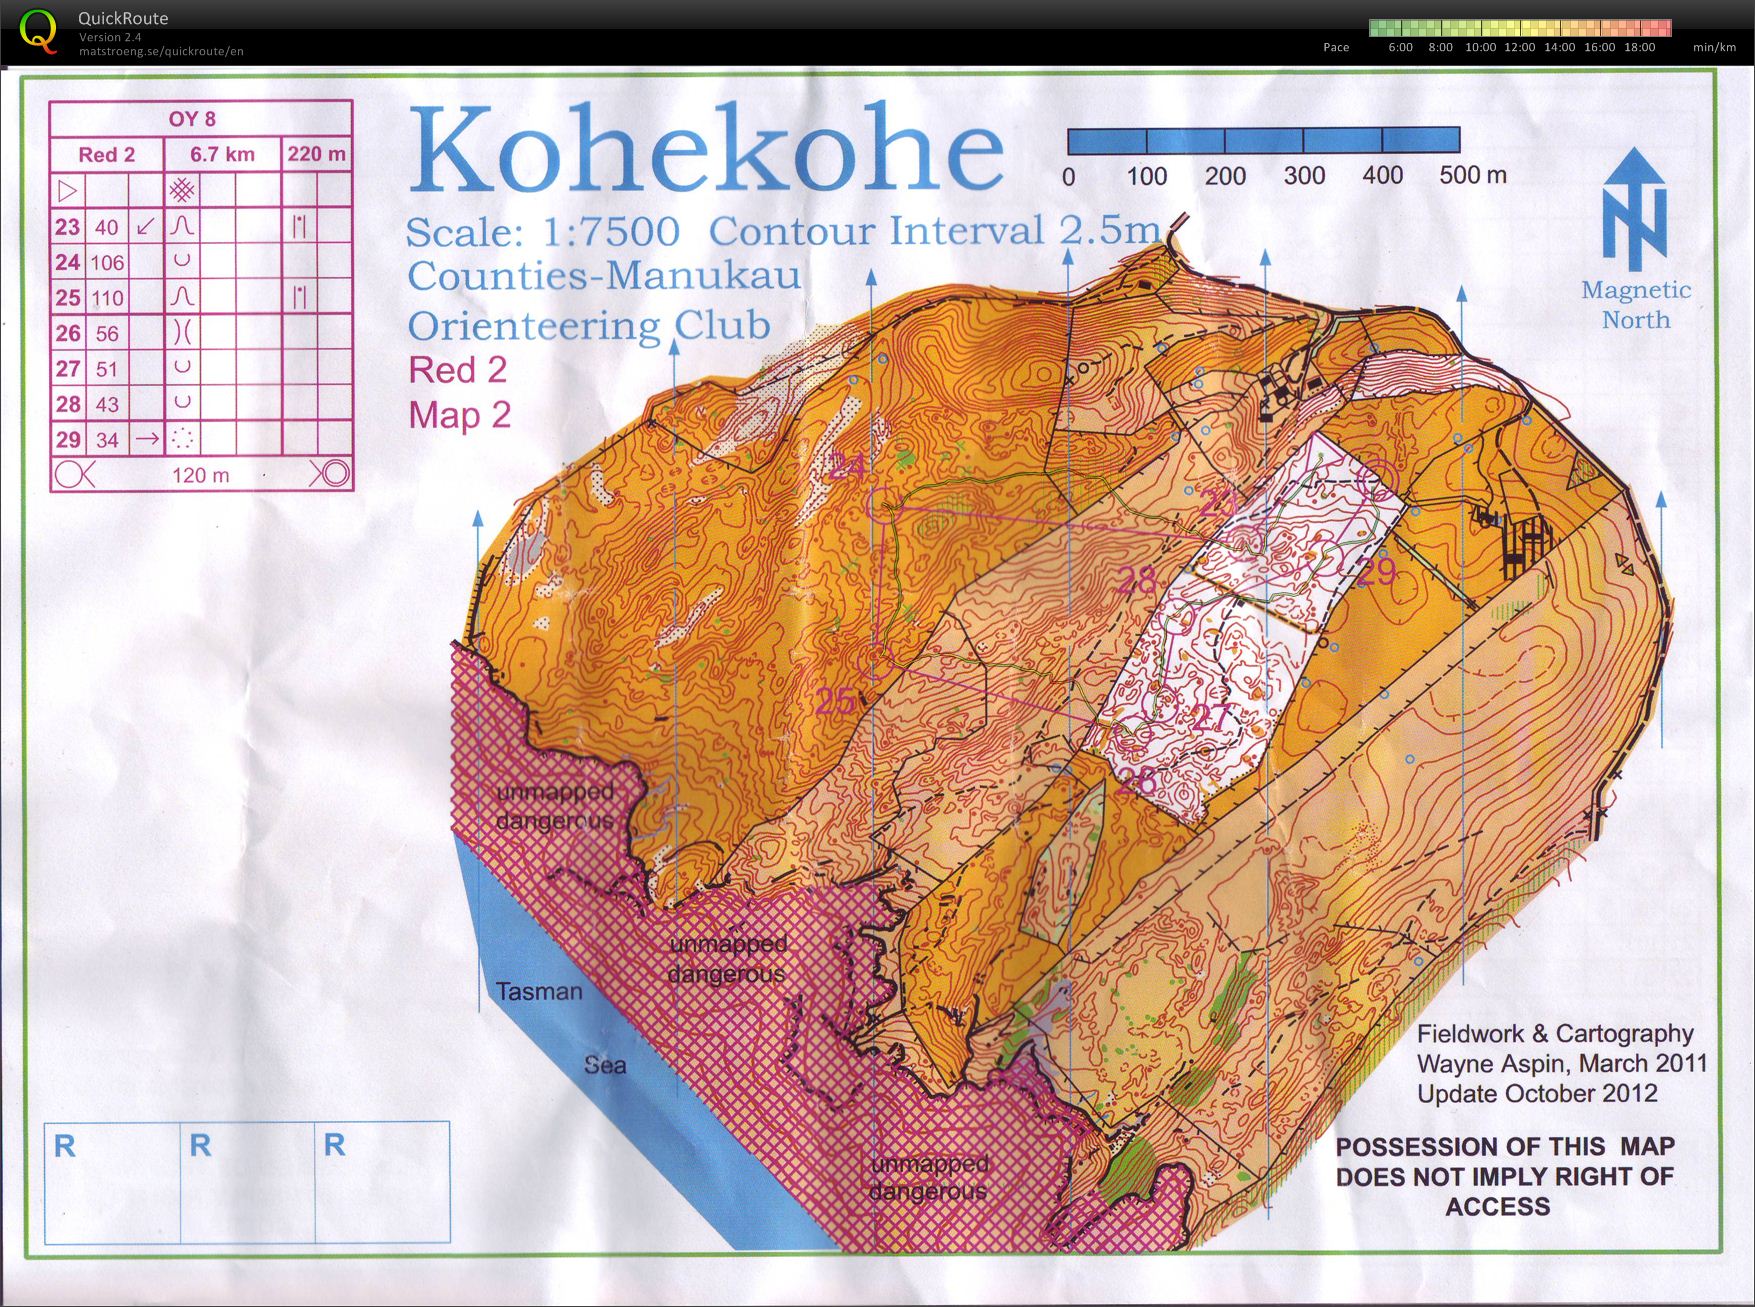 OY8 Kohekohe (part 2) (27.10.2012)